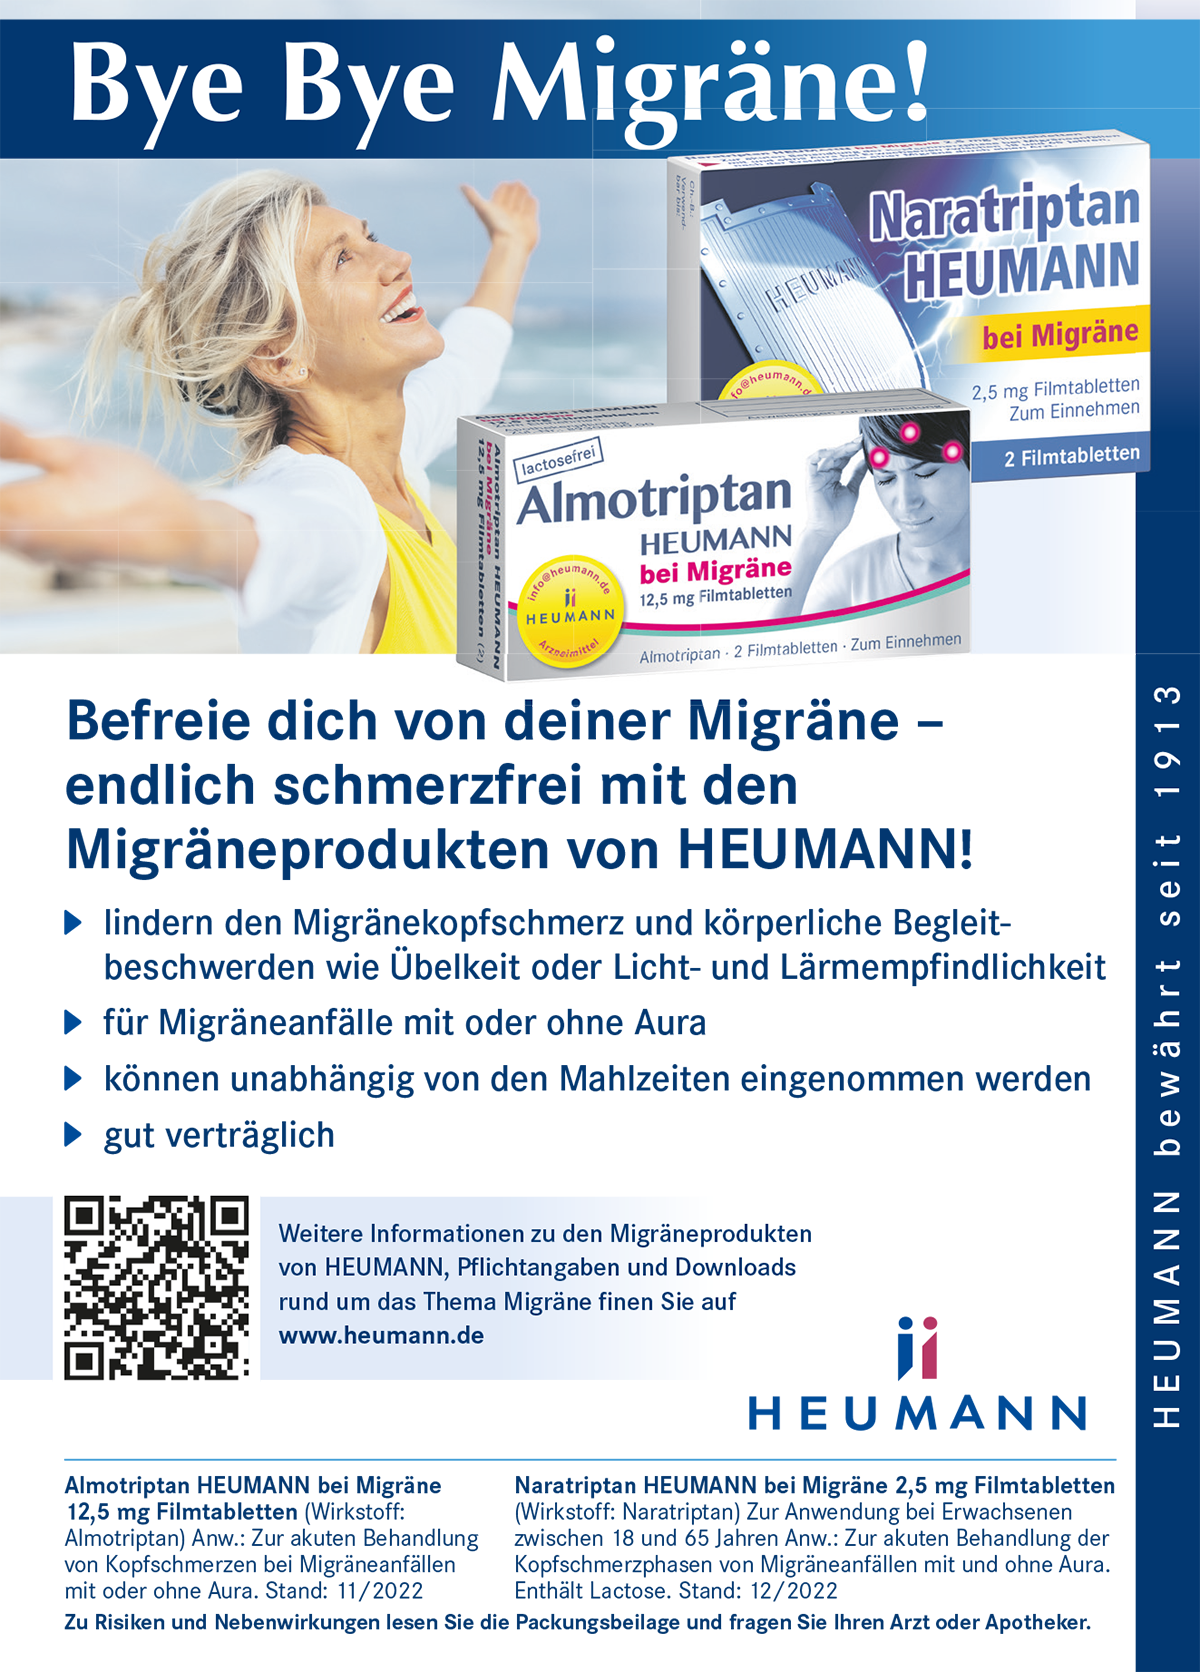 Anzeige Heumann Pharma GmbH zum Thema Migräne